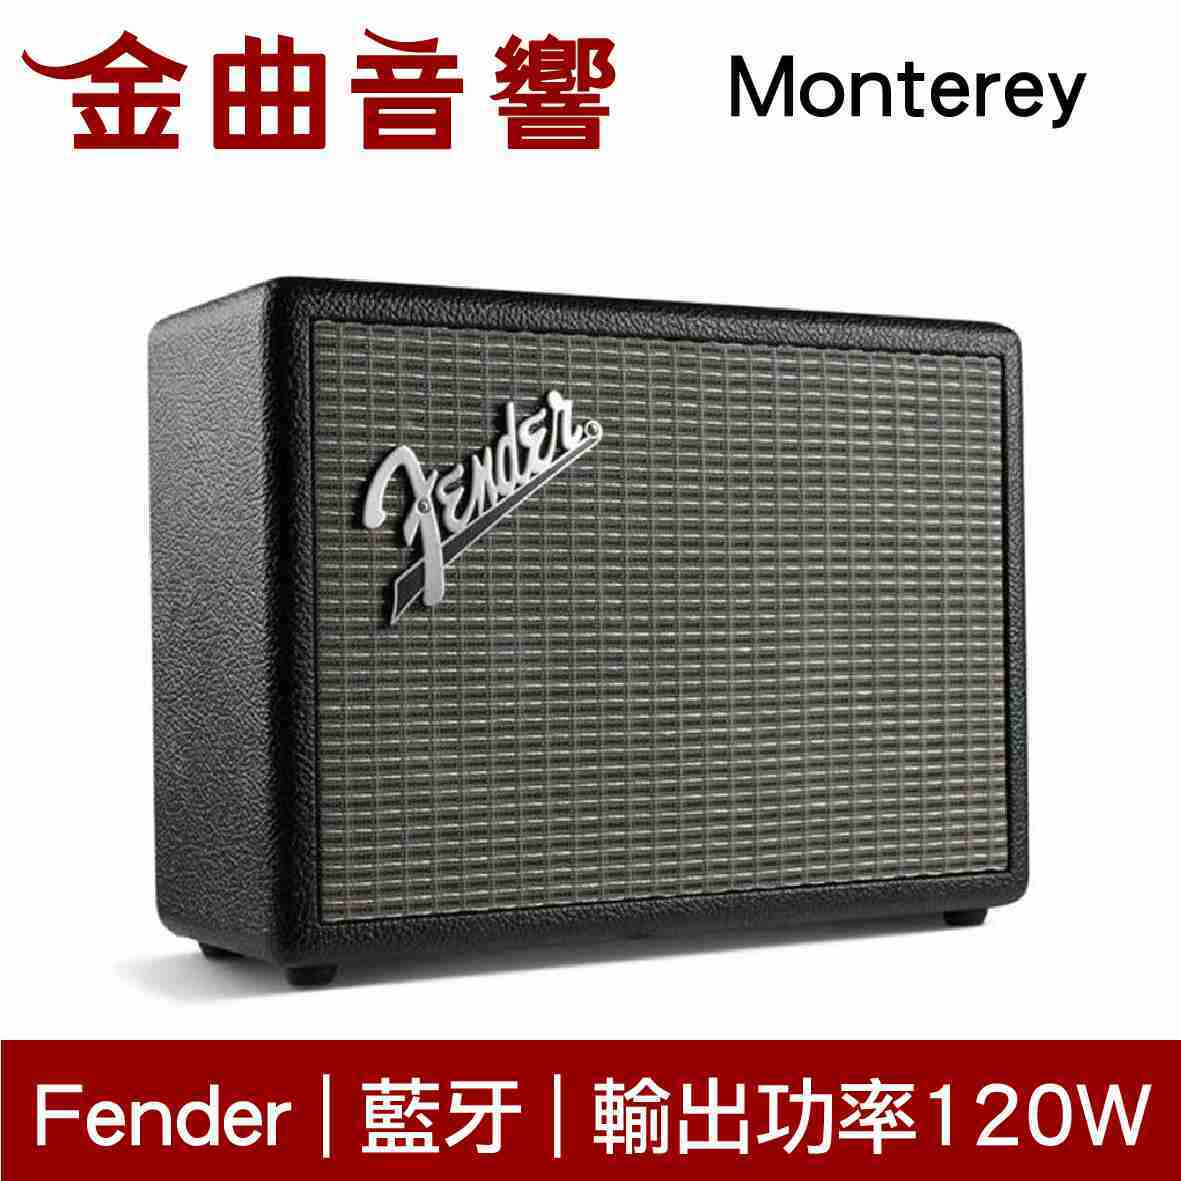 Fender Monterey 黑色 無線 藍牙 喇叭 音箱 | 金曲音響